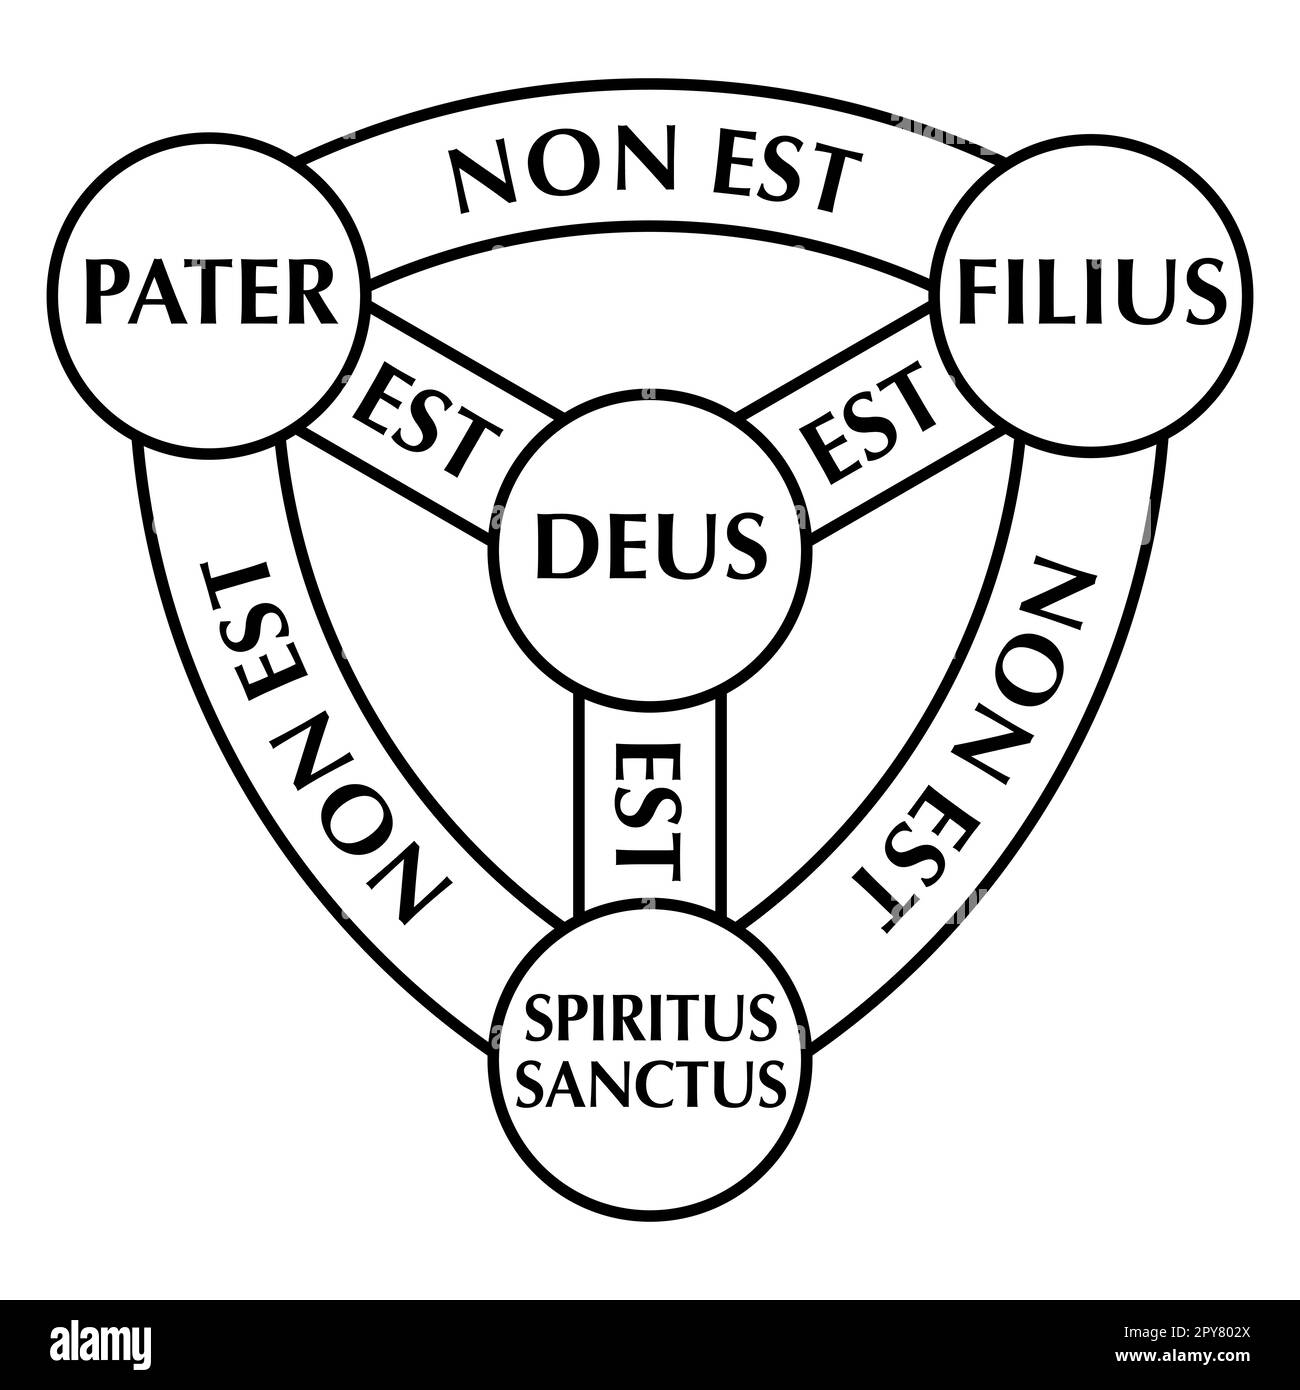 Scudo della Trinità, diagramma di Scutum Fidei, lo scudo della fede. Simbolo cristiano medievale, e braccia araldiche di Dio. Foto Stock